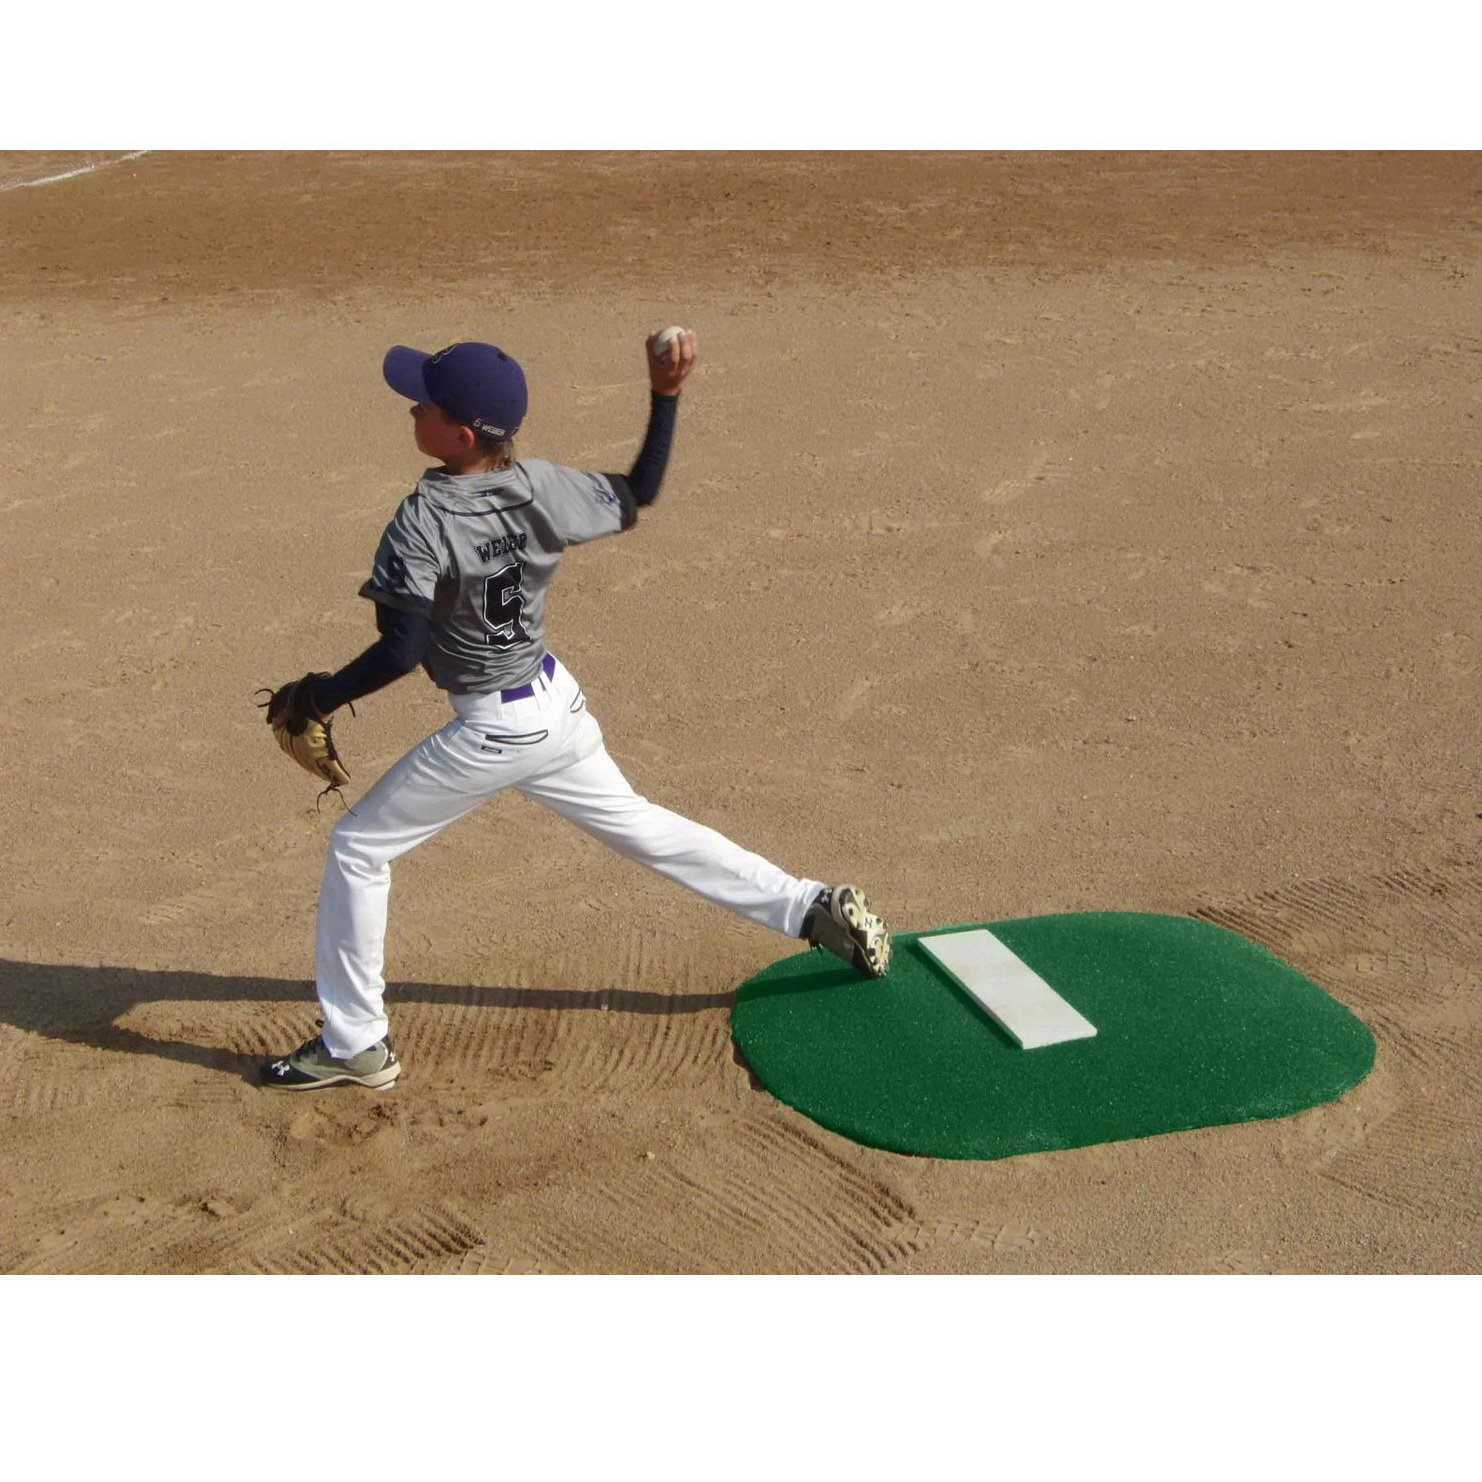 PortoLite 4" Youth Portable Baseball Pitching Mound green turf kid pitching off mound